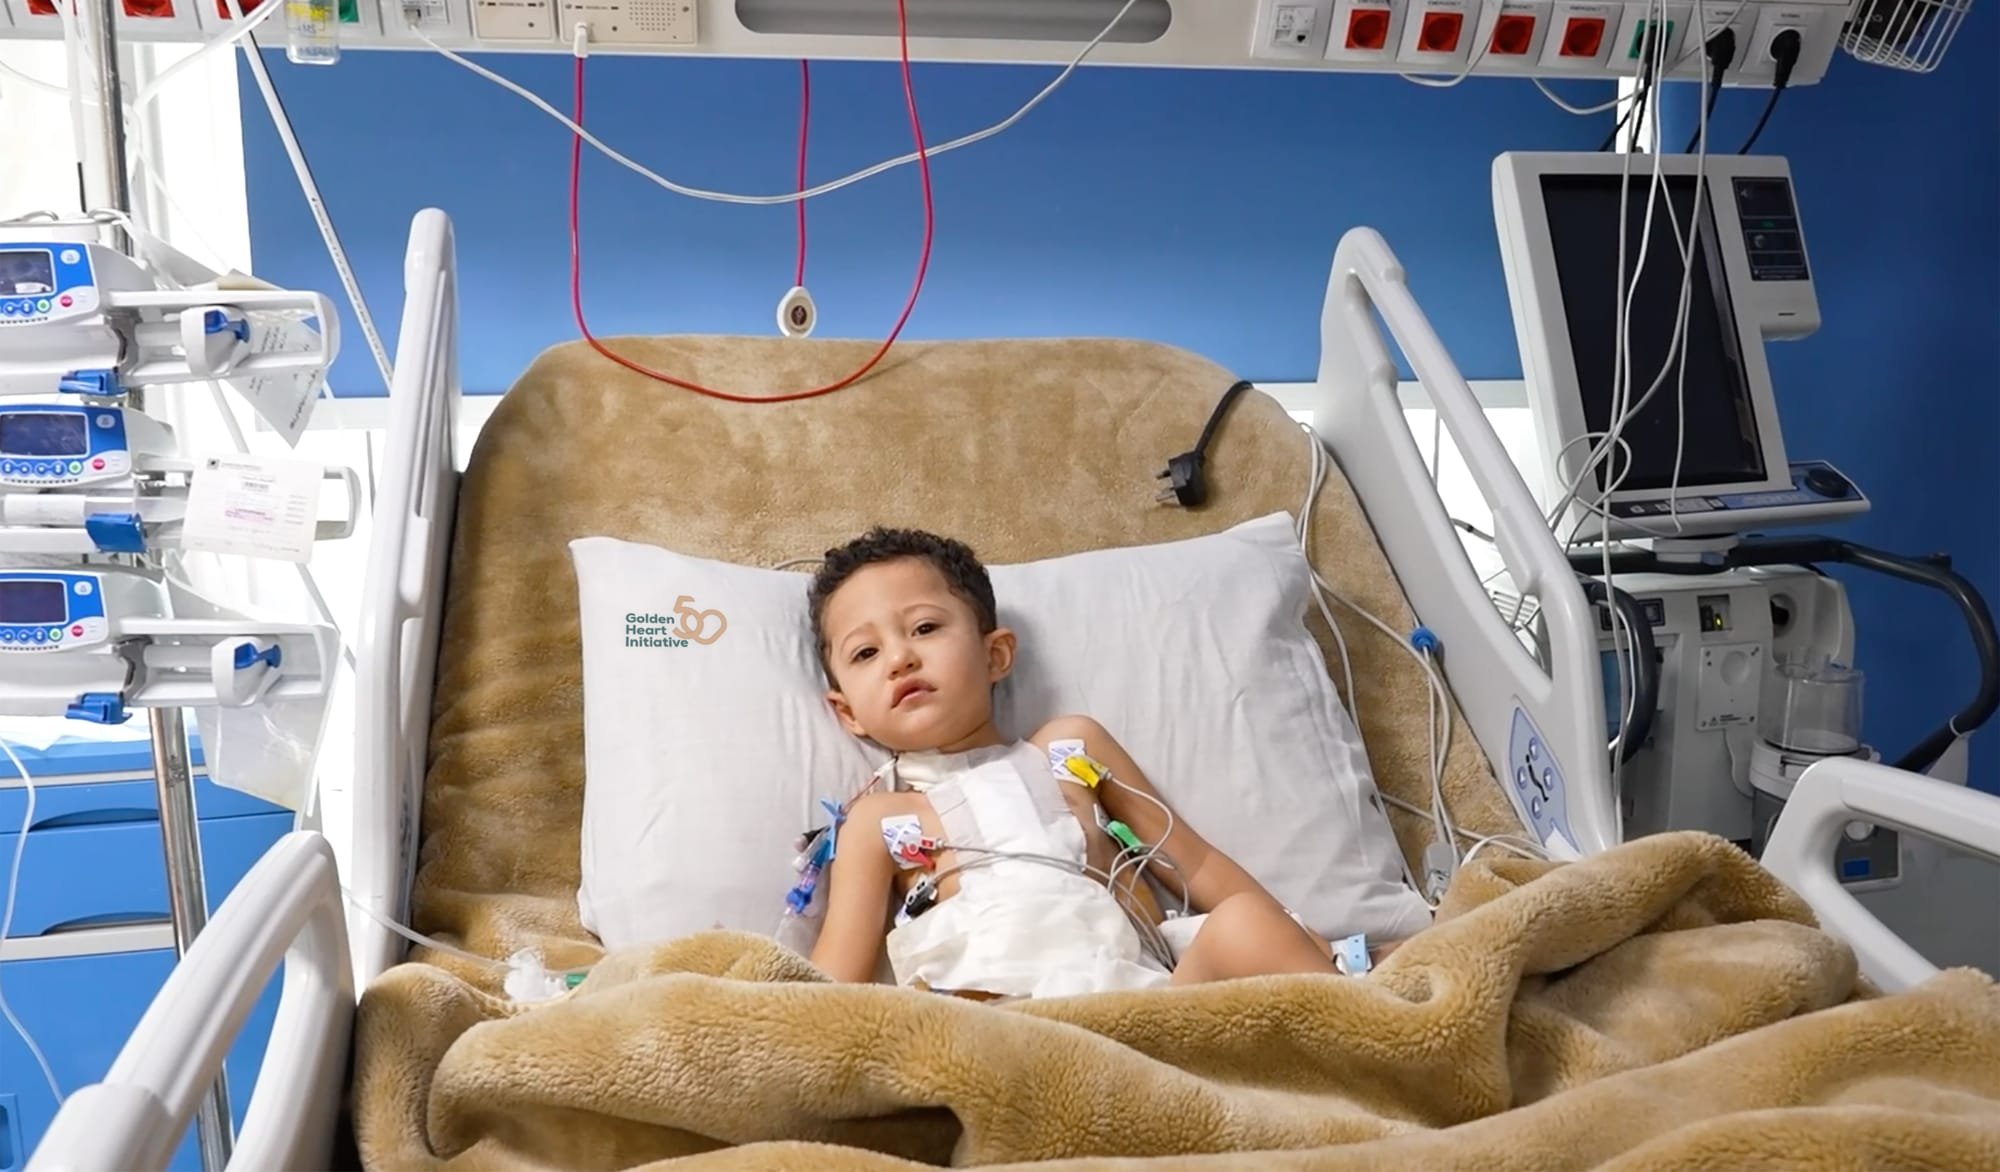 مبادرة "القلب الذهبي" تعالج 50 طفلاً مريضا بالقلب حول العالم